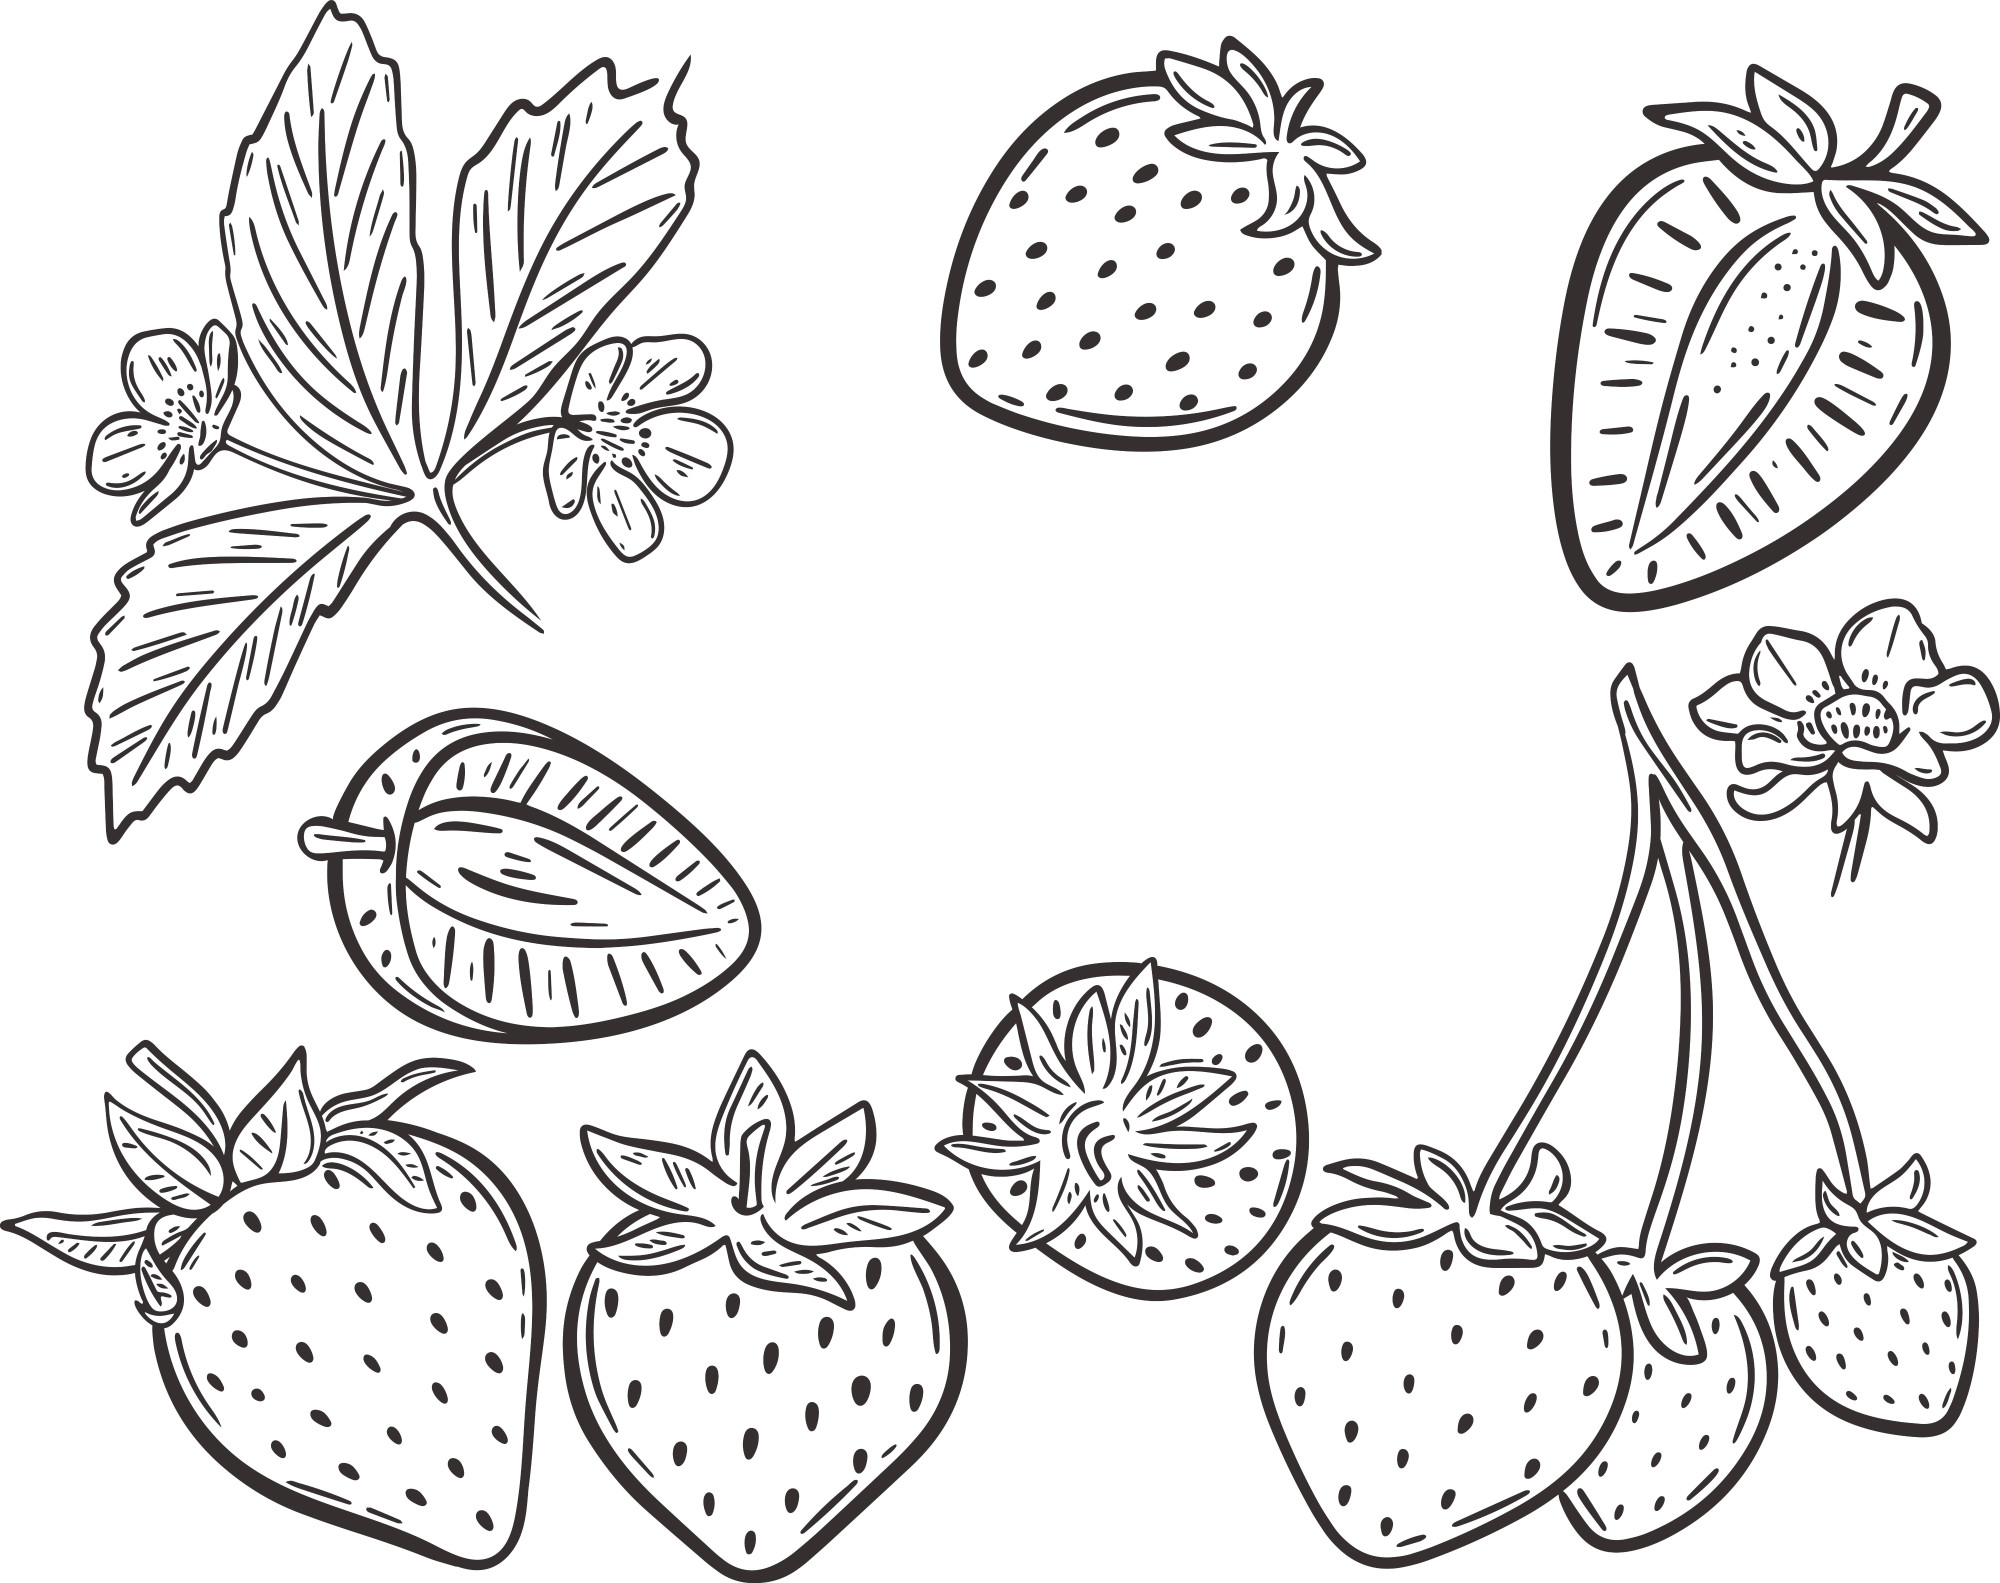 Раскраска для детей: ягоды земляники